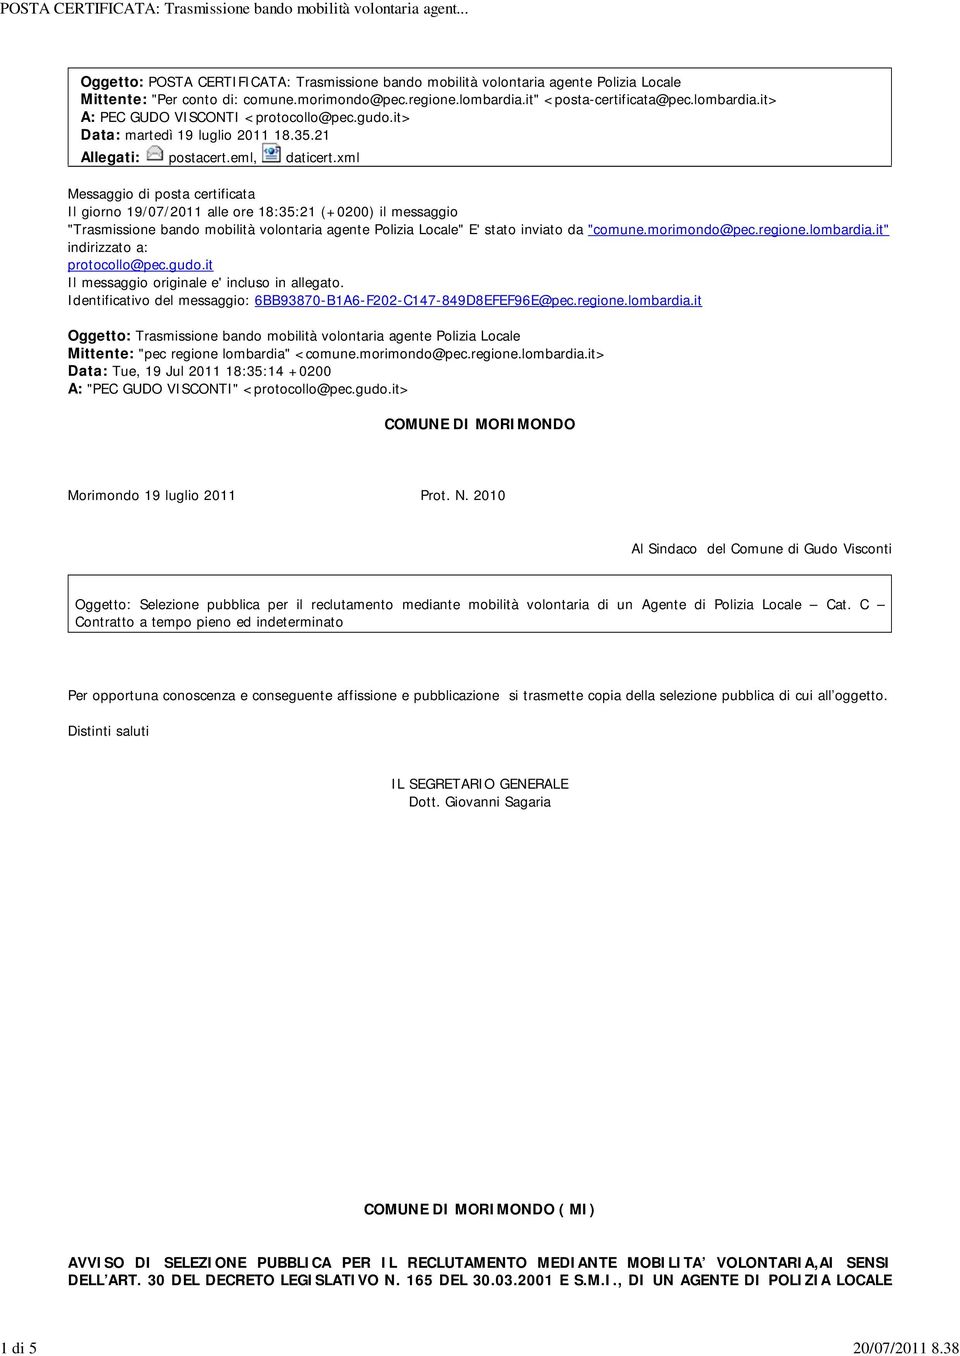 xml Messaggio di posta certificata Il giorno 19/07/2011 alle ore 18:35:21 (+0200) il messaggio "Trasmissione bando mobilità volontaria agente Polizia Locale" E' stato inviato da "comune.morimondo@pec.